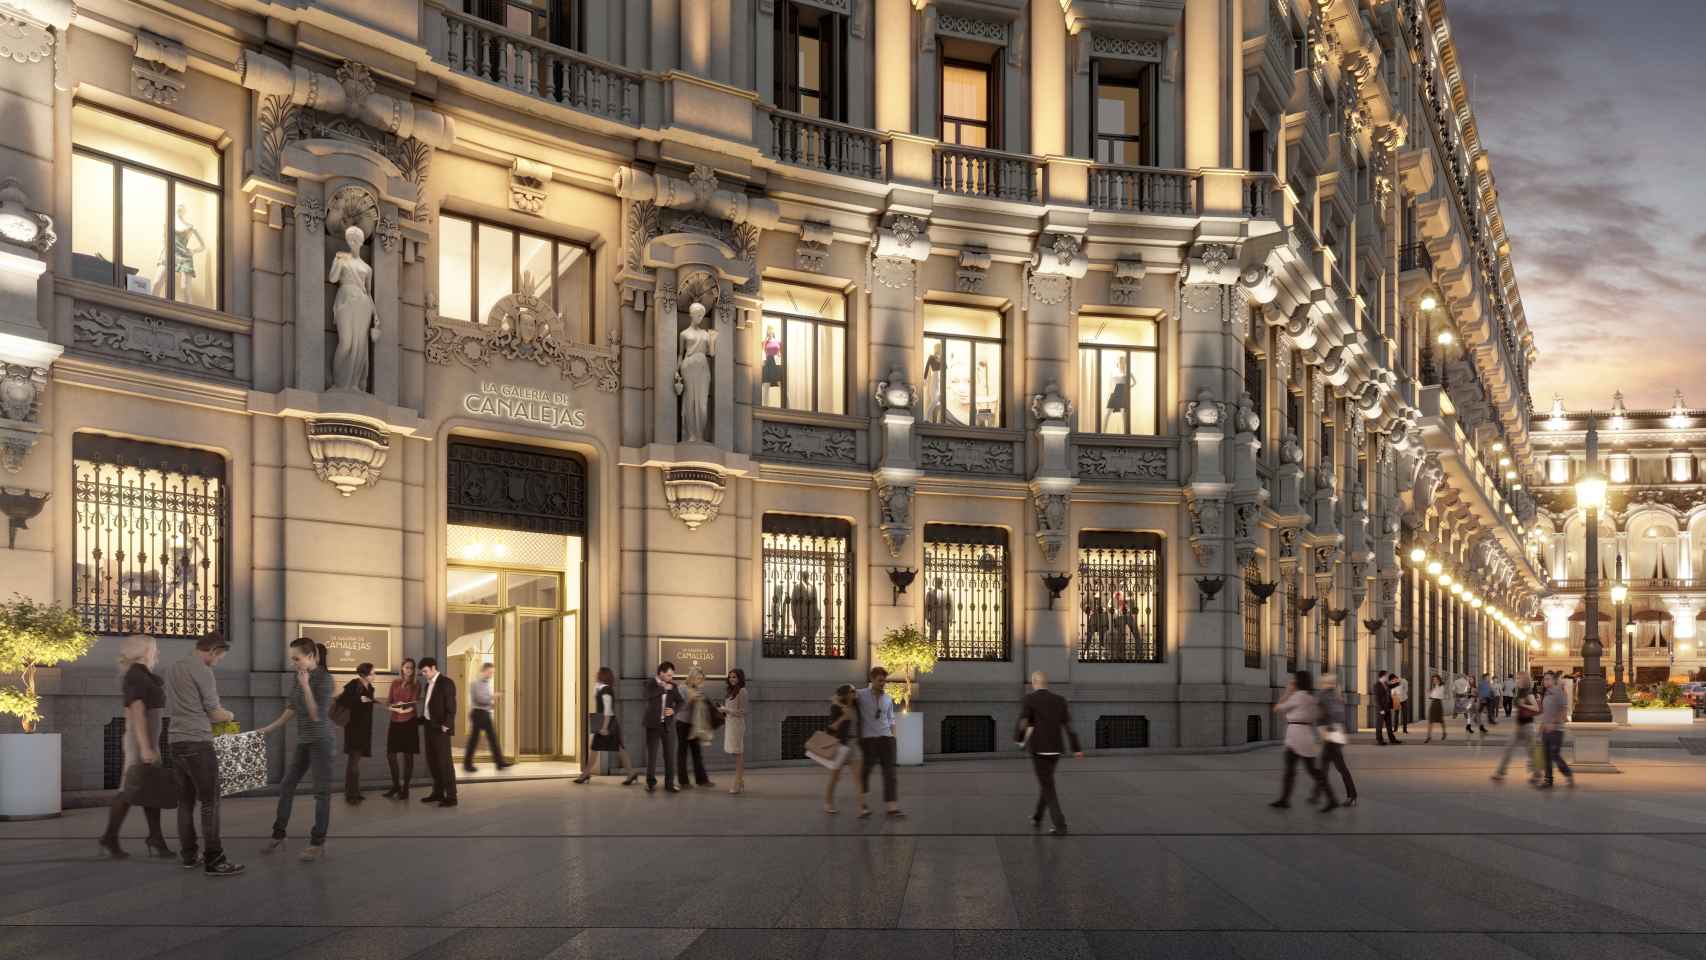 Descubrimos cómo será el Centro Canalejas Madrid, el nuevo corazón del lujo